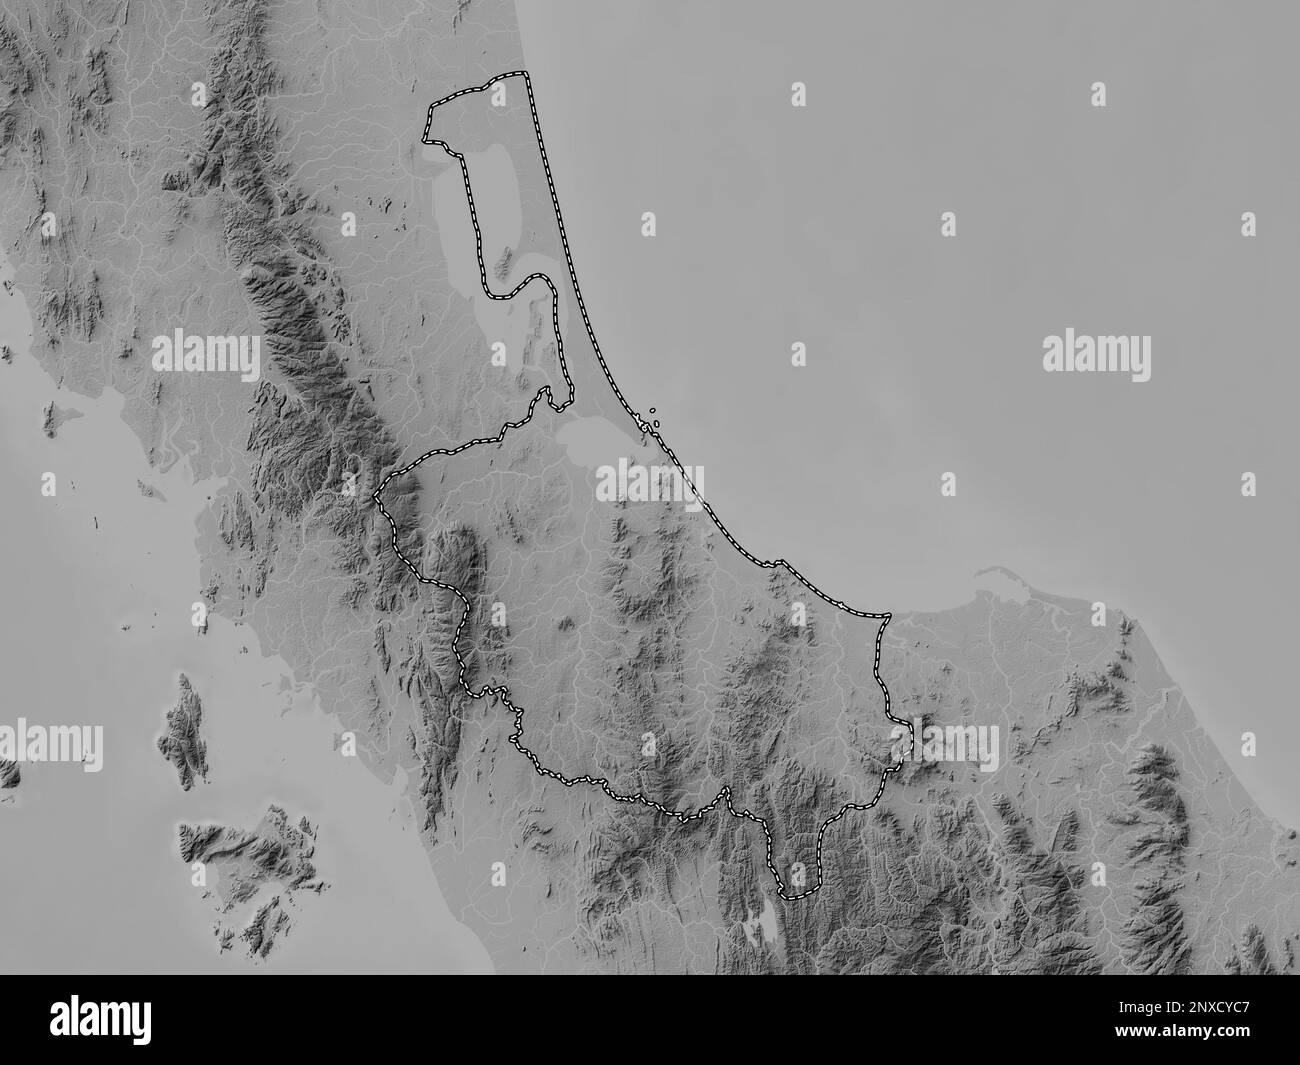 Songkhla, province de Thaïlande. Carte d'altitude en niveaux de gris avec lacs et rivières Banque D'Images